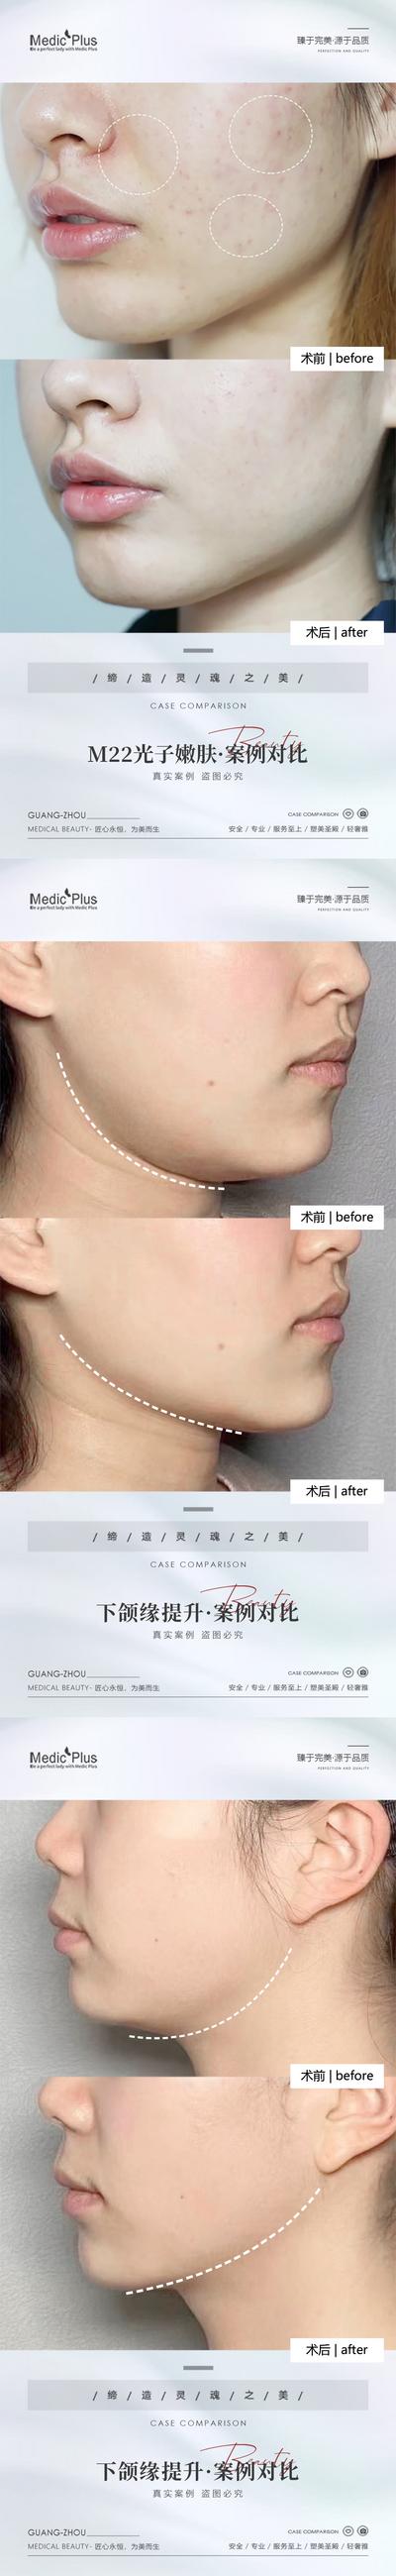 【南门网】海报 医美 整形 美容 光子嫩肤 下颌缘提升 抗衰 案例 对比